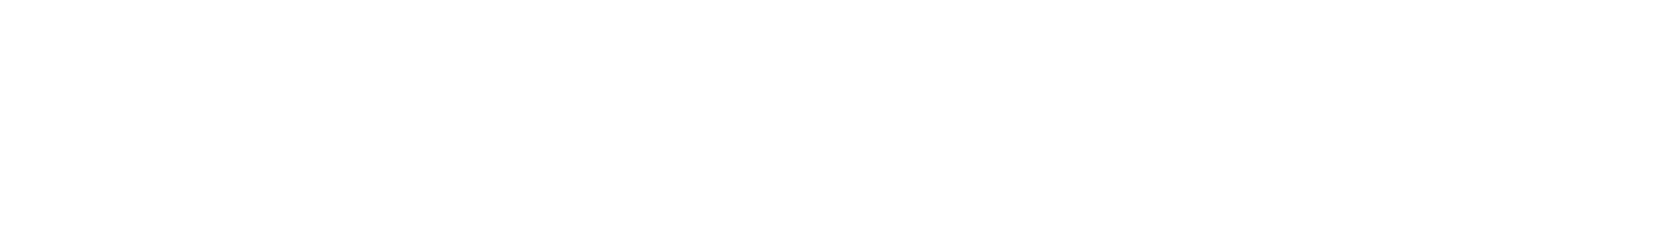 Morgan Stanley logo large for dark backgrounds (transparent PNG)